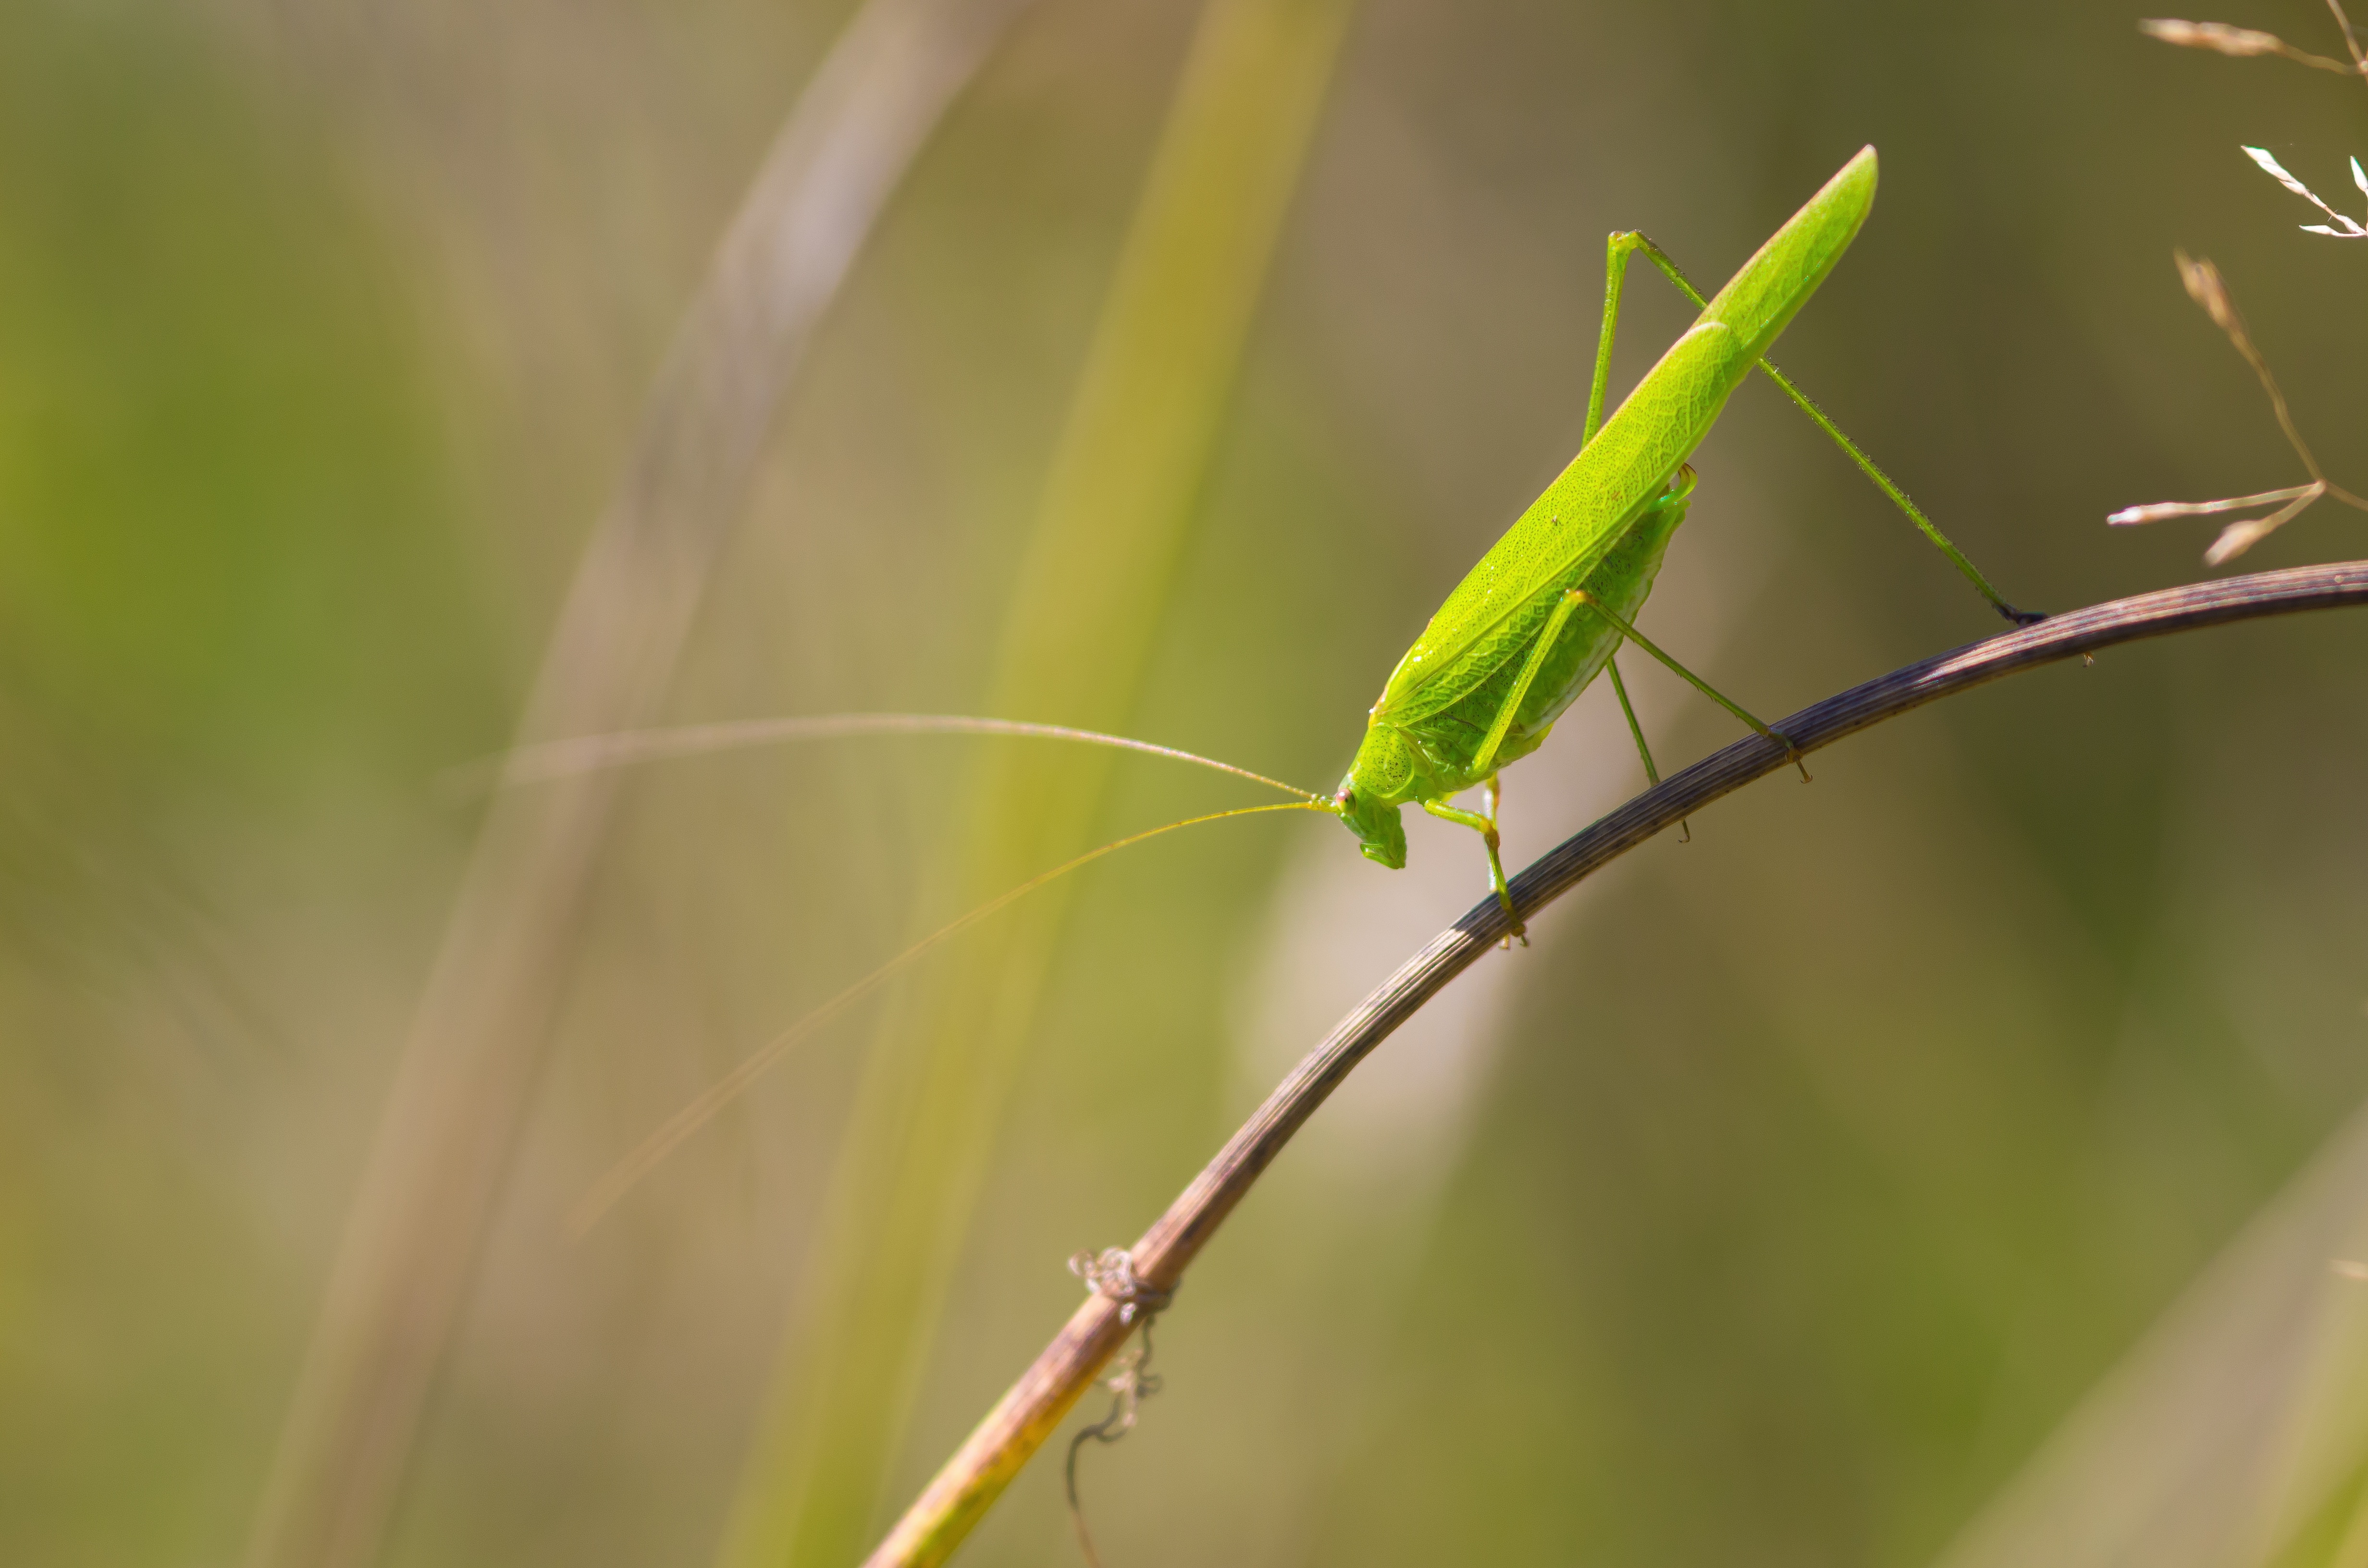 Green Grasshopper on a Branch by Piet van de Wiel